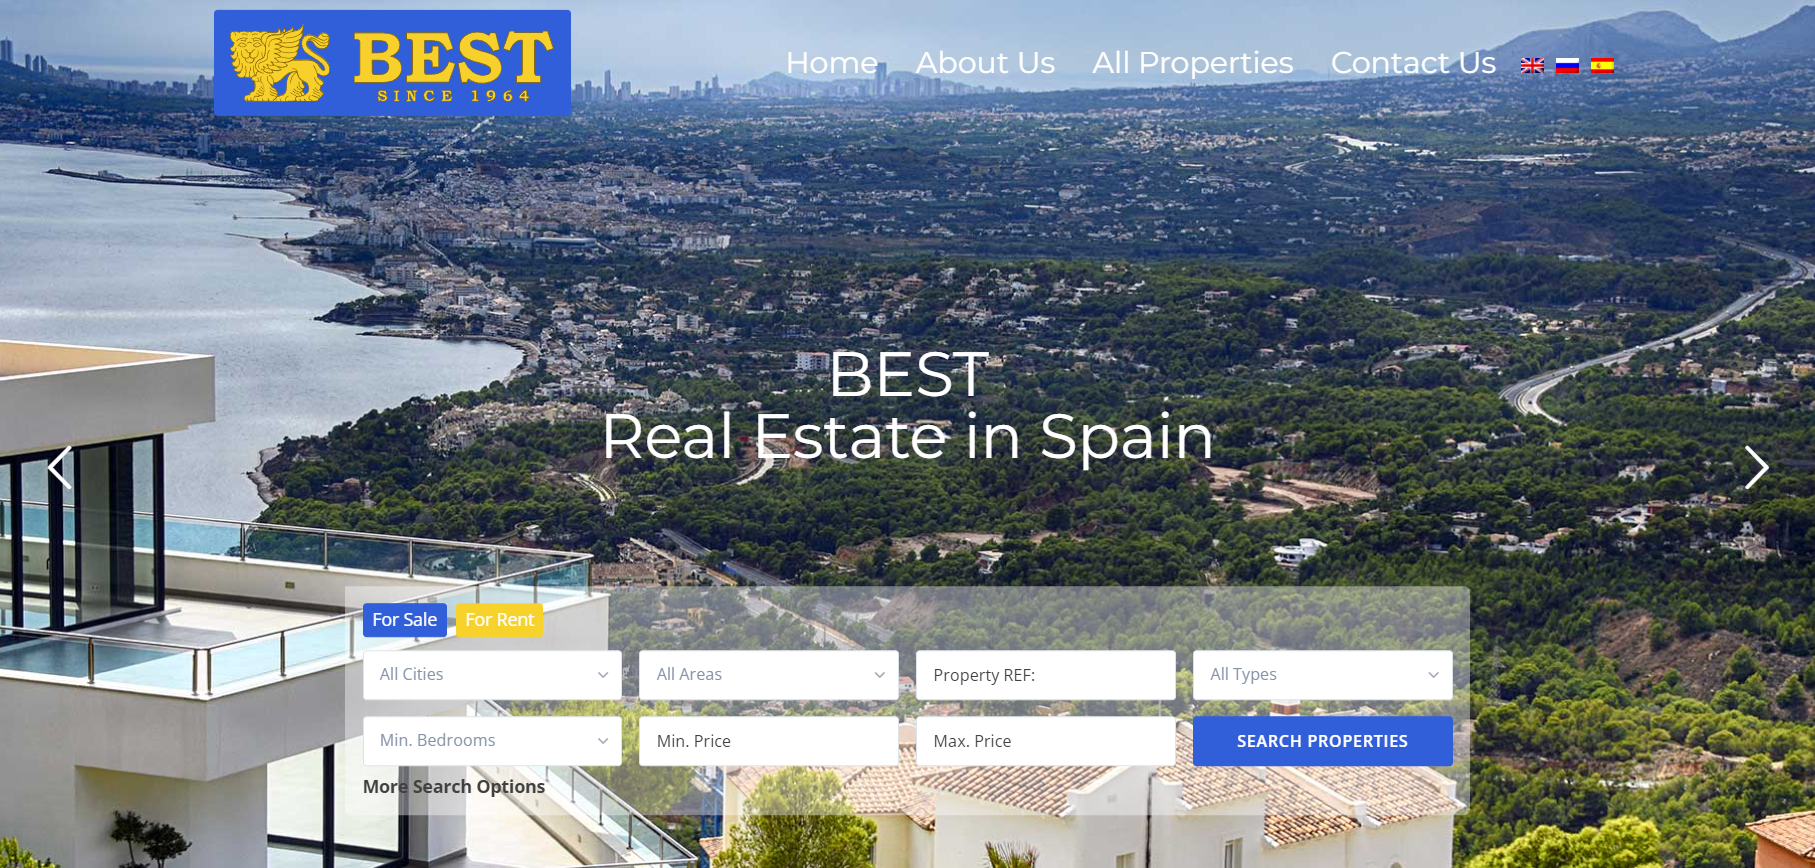 Агентство Best Luxury Properties: Реальность или Обман? Исследуем опыт работы с агентством Best Luxury Properties в Испании.